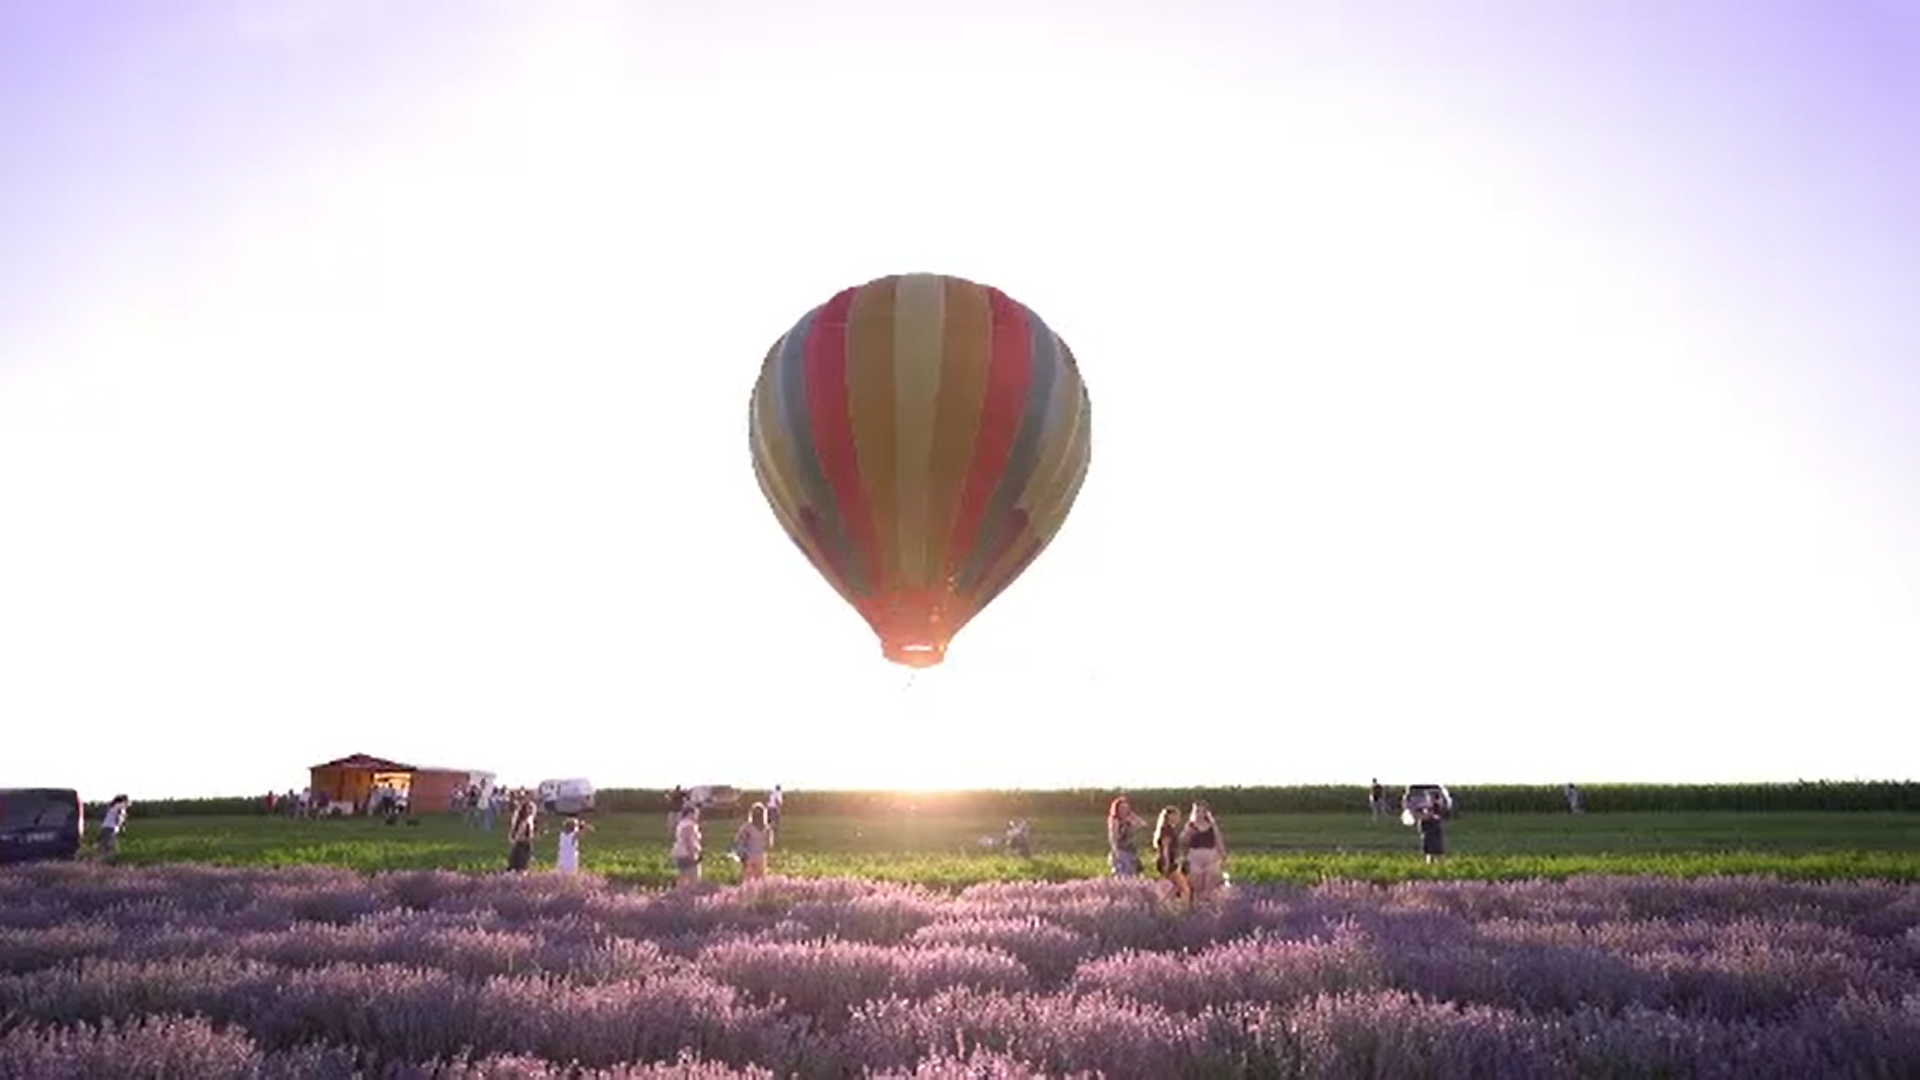 Pe un lan de lavandă din Mureș turiștii pot admira peisajul din balonul cu aer cald